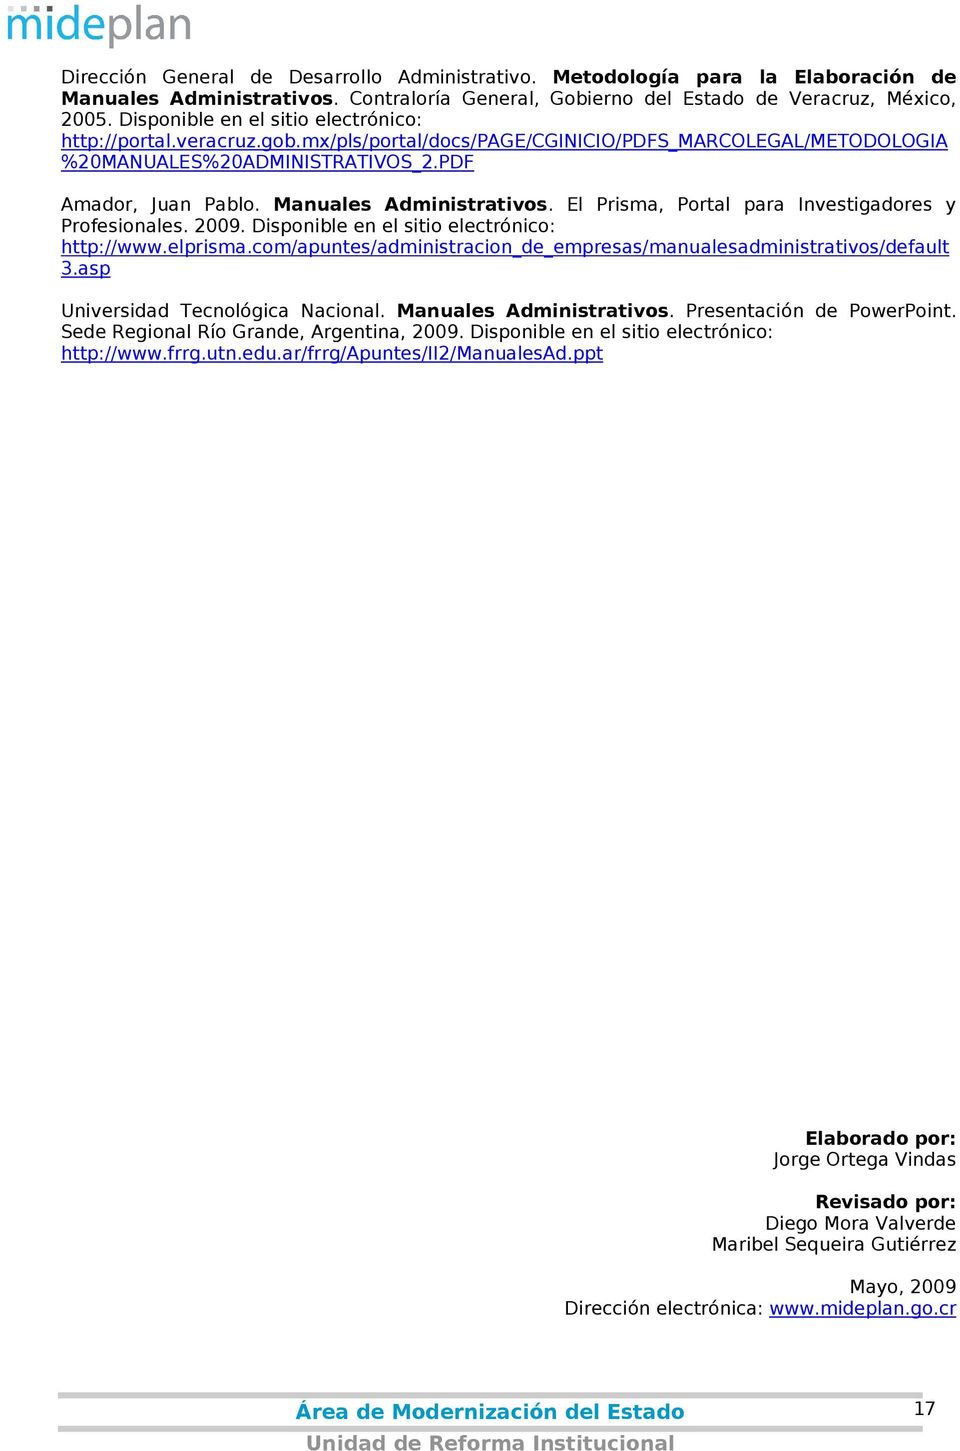 Manuales Administrativos. El Prisma, Portal para Investigadores y Profesionales. 2009. Disponible en el sitio electrónico: http://www.elprisma.